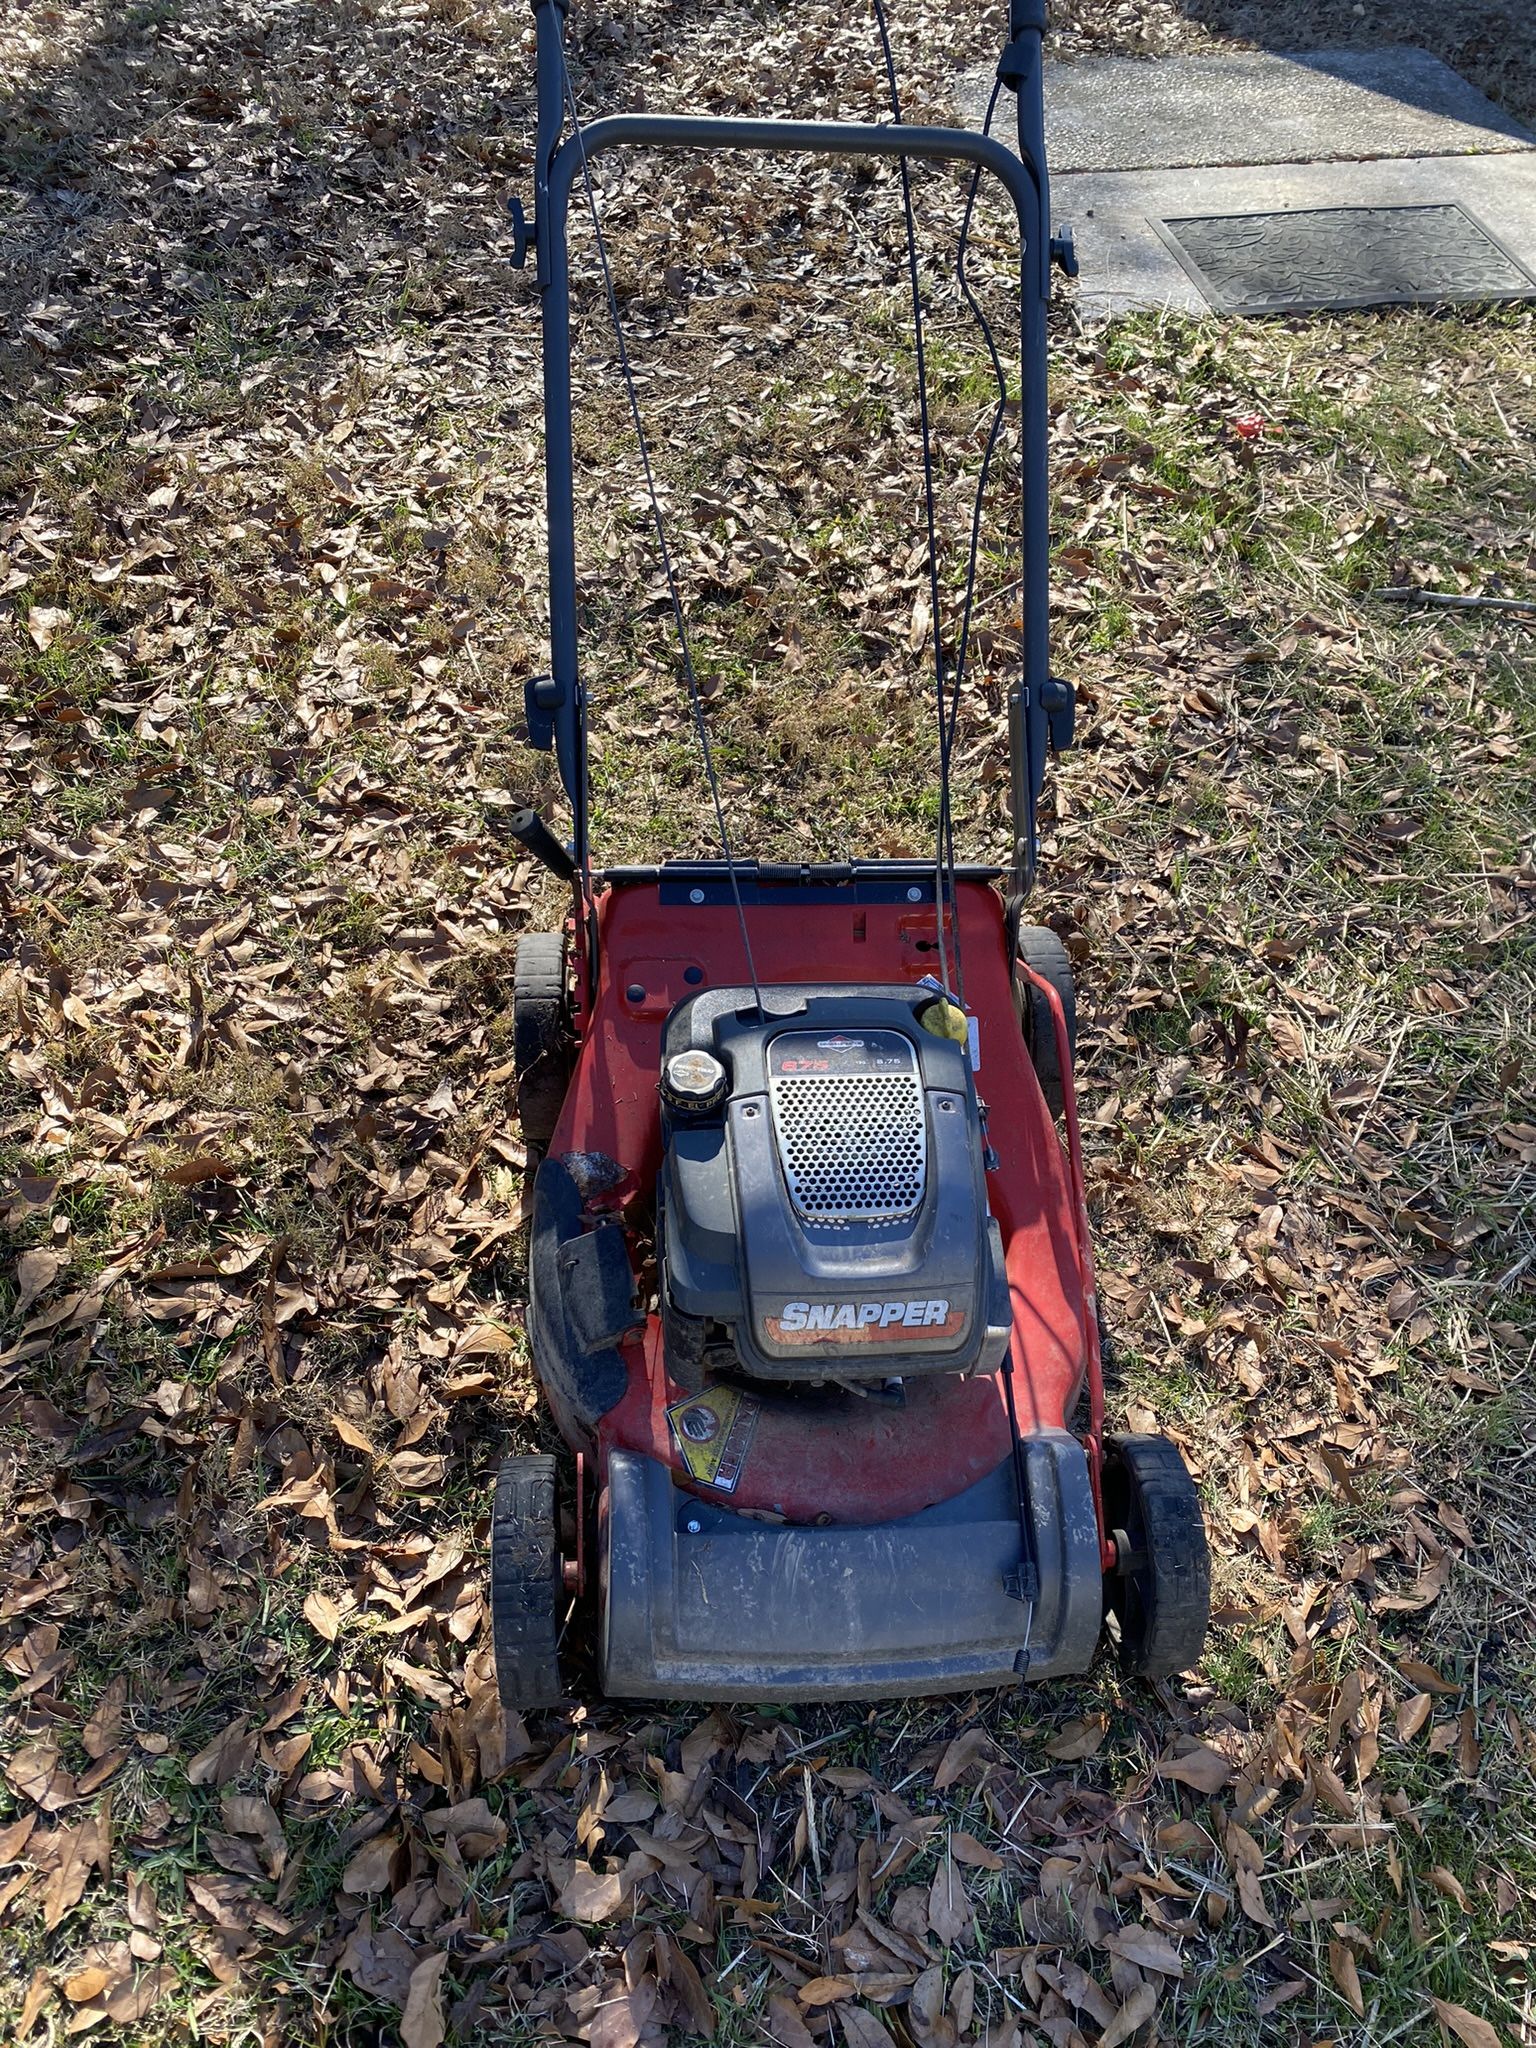 Snapper Lawn Mower 